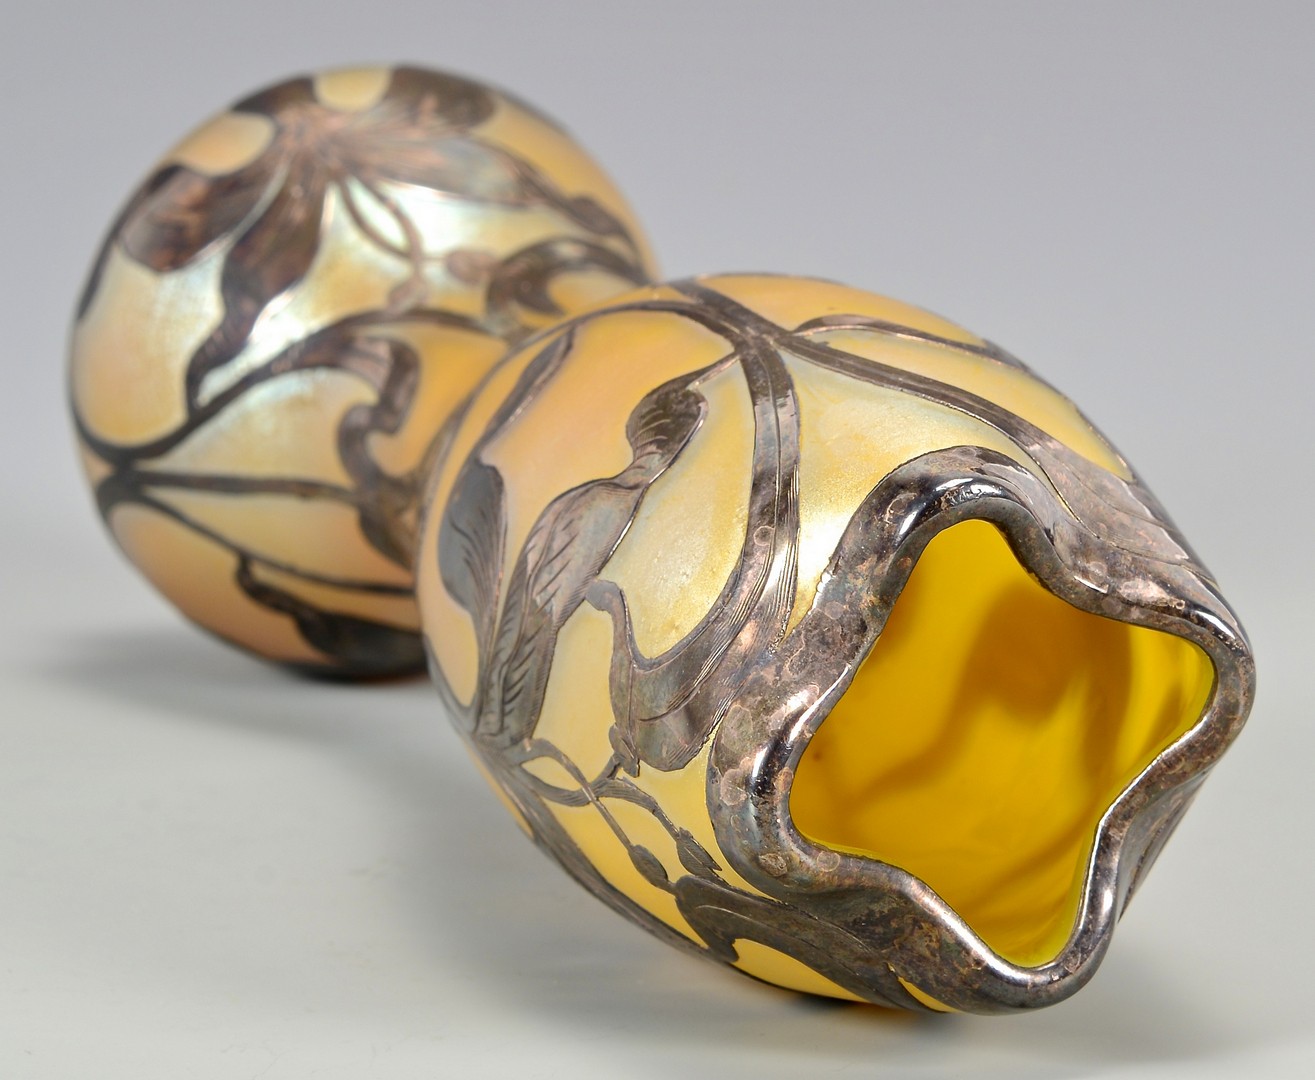 Lot 484: Loetz Art Glass Vase, Silver Overlay